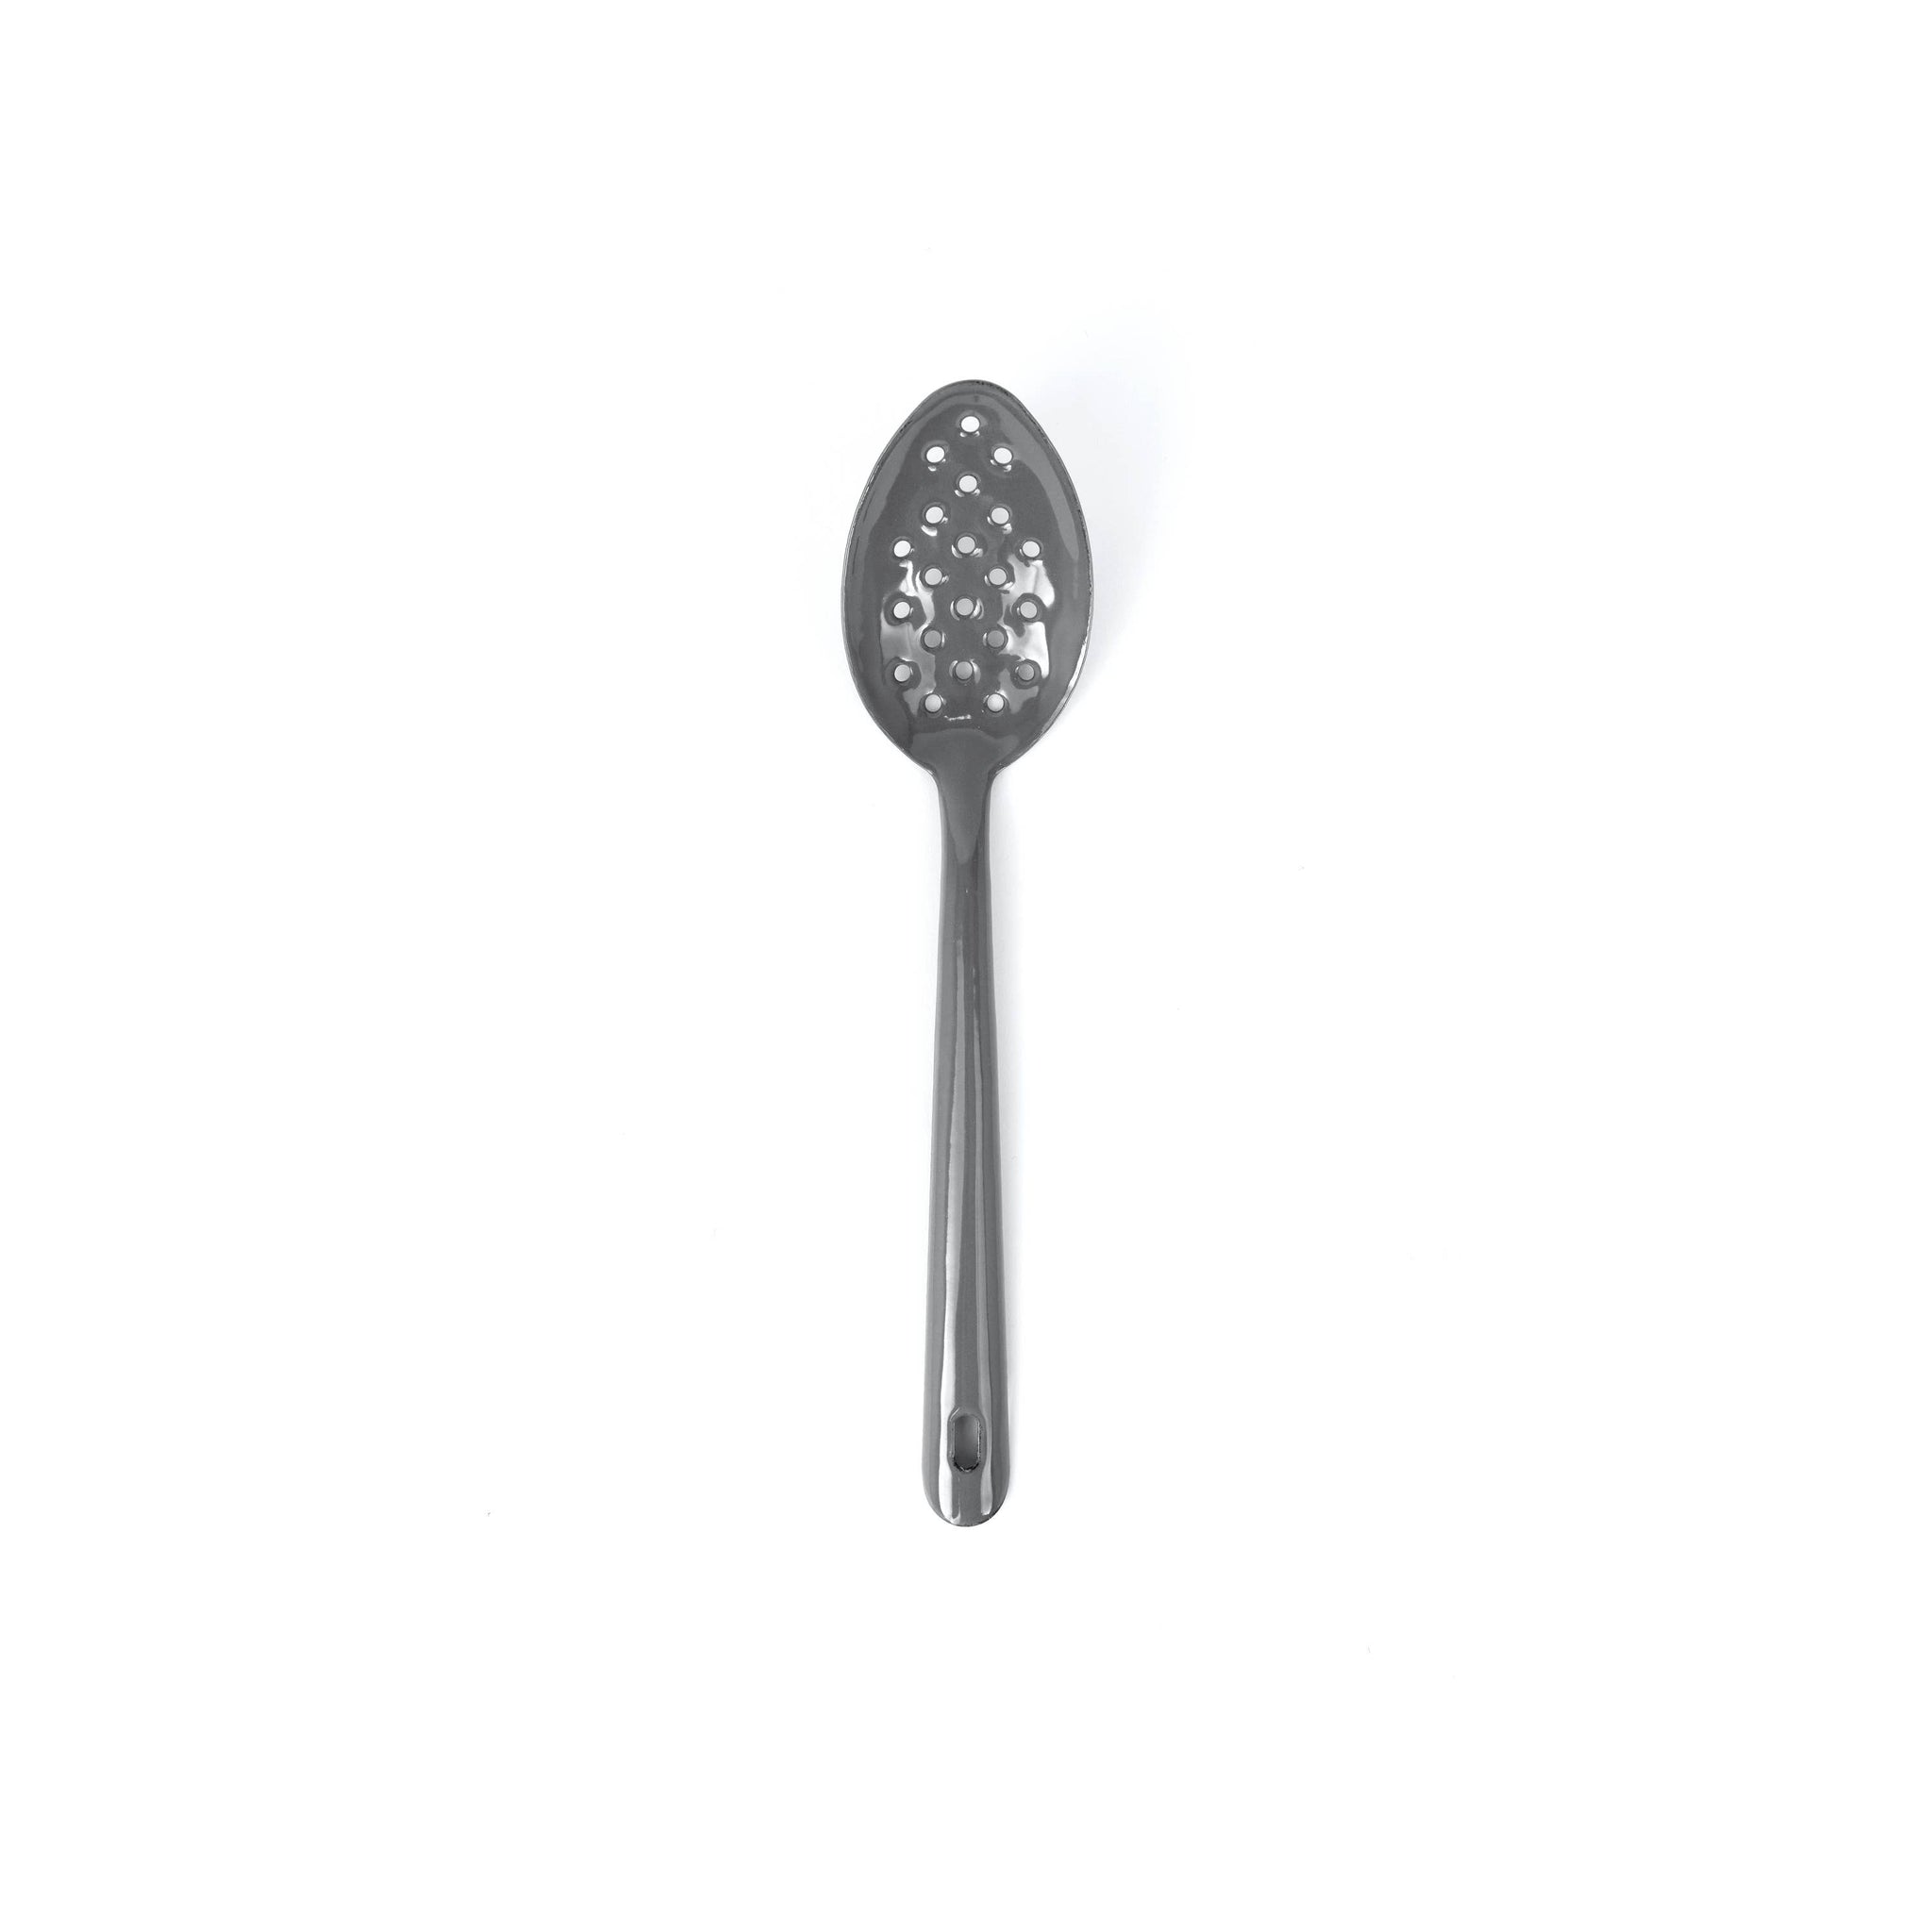 Vintage Enamelware Large Slotted Spoon: Medium Blue